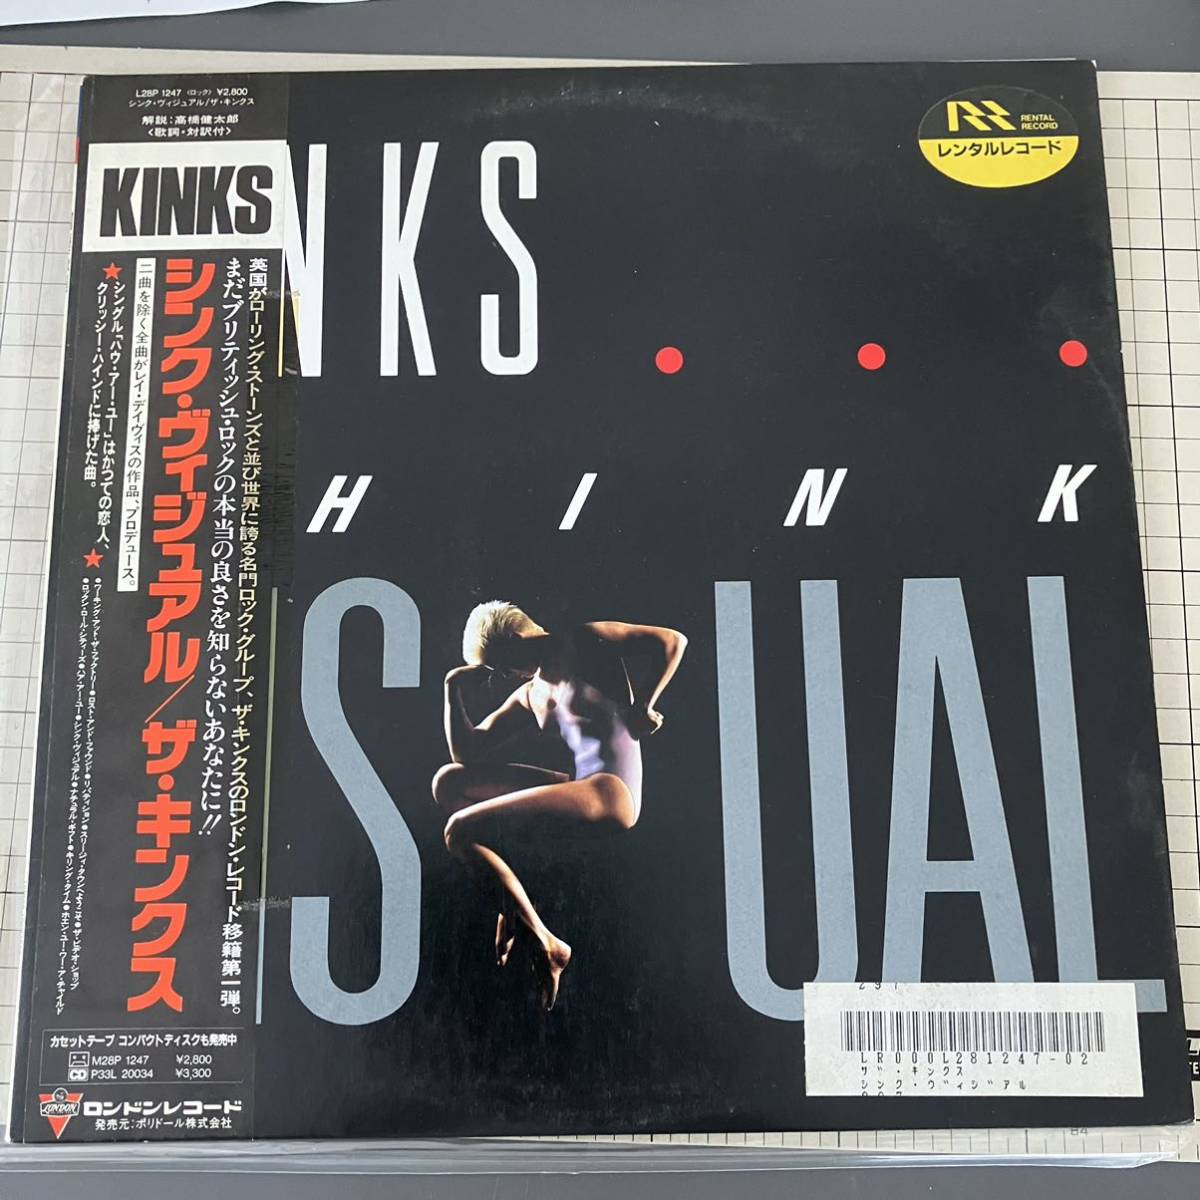 【LP】The Kinks / Think Vsual / L28P-1247 / JPN / obi, insert_画像1